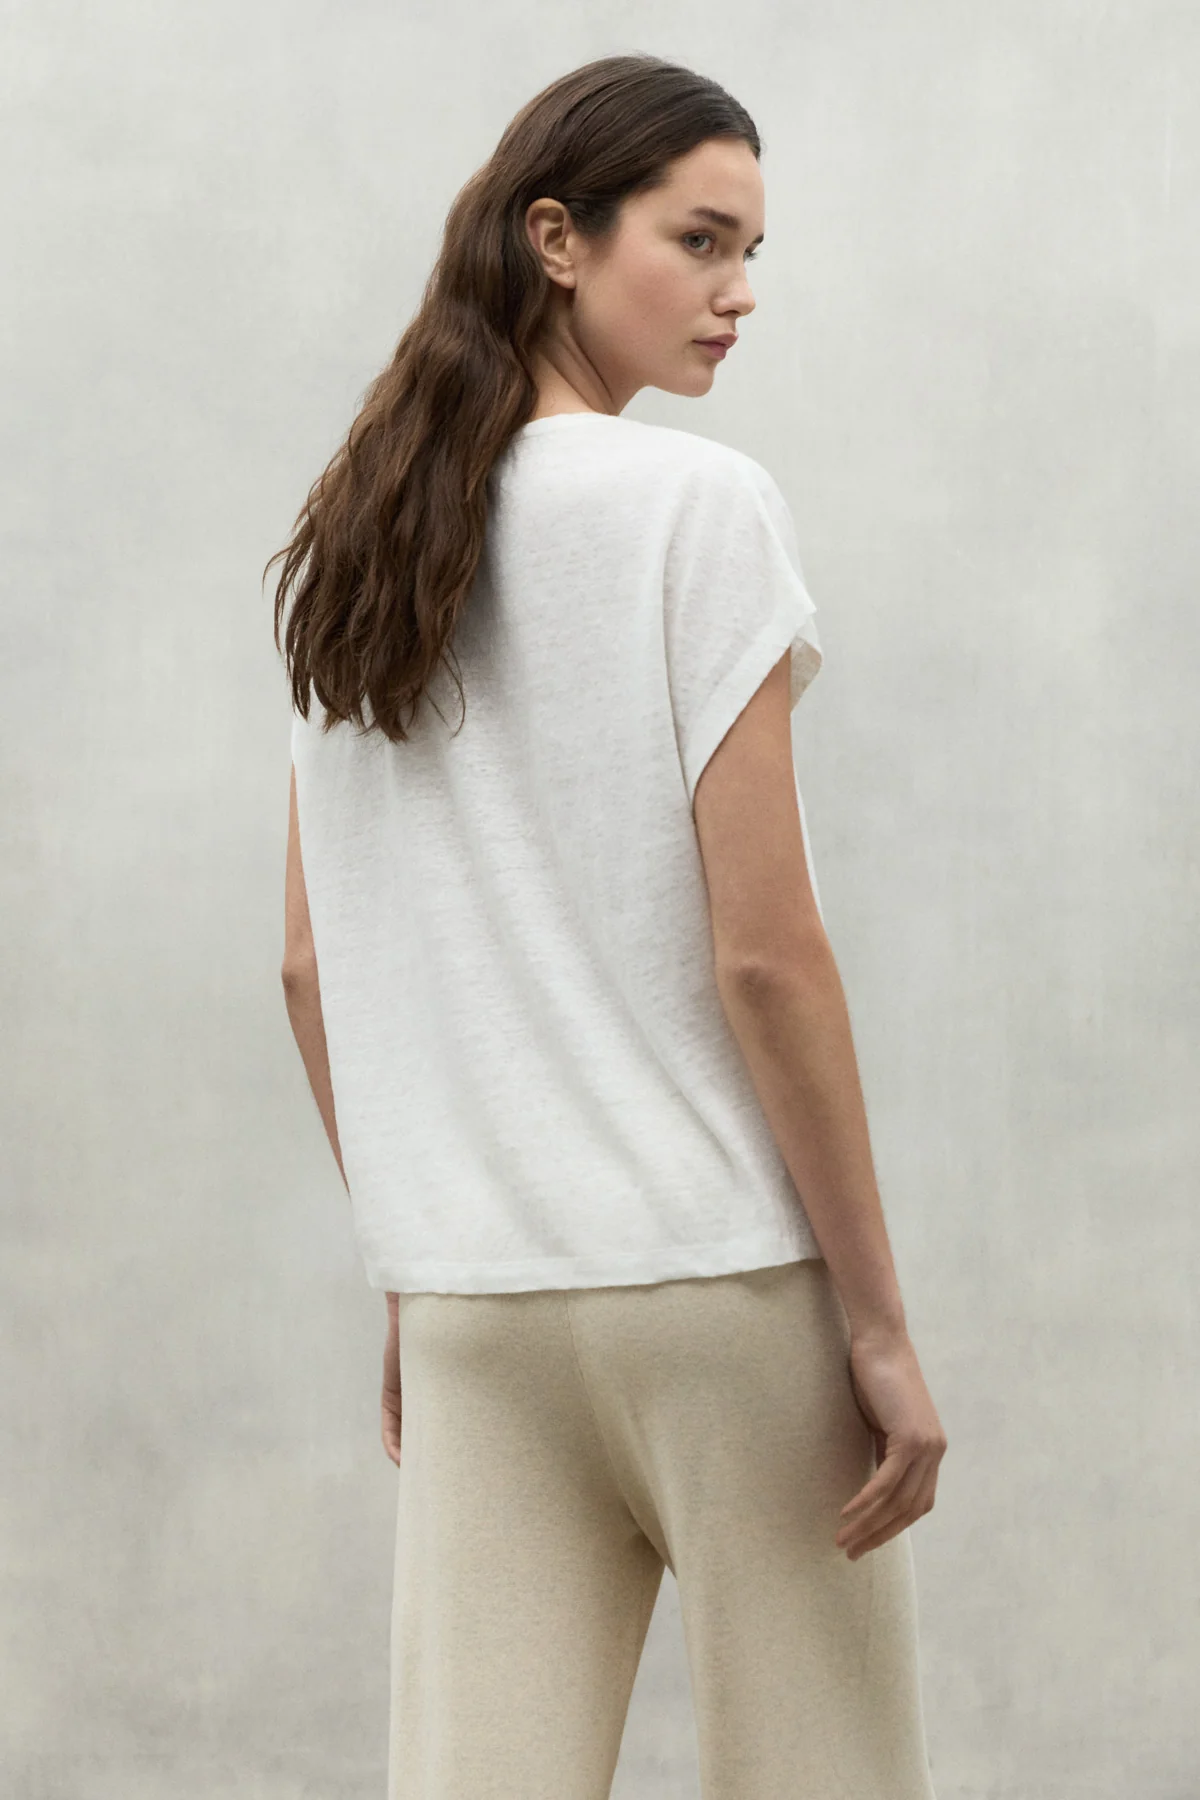 ECOALF camiseta en lino manga corta color blanco y escote pico - 2